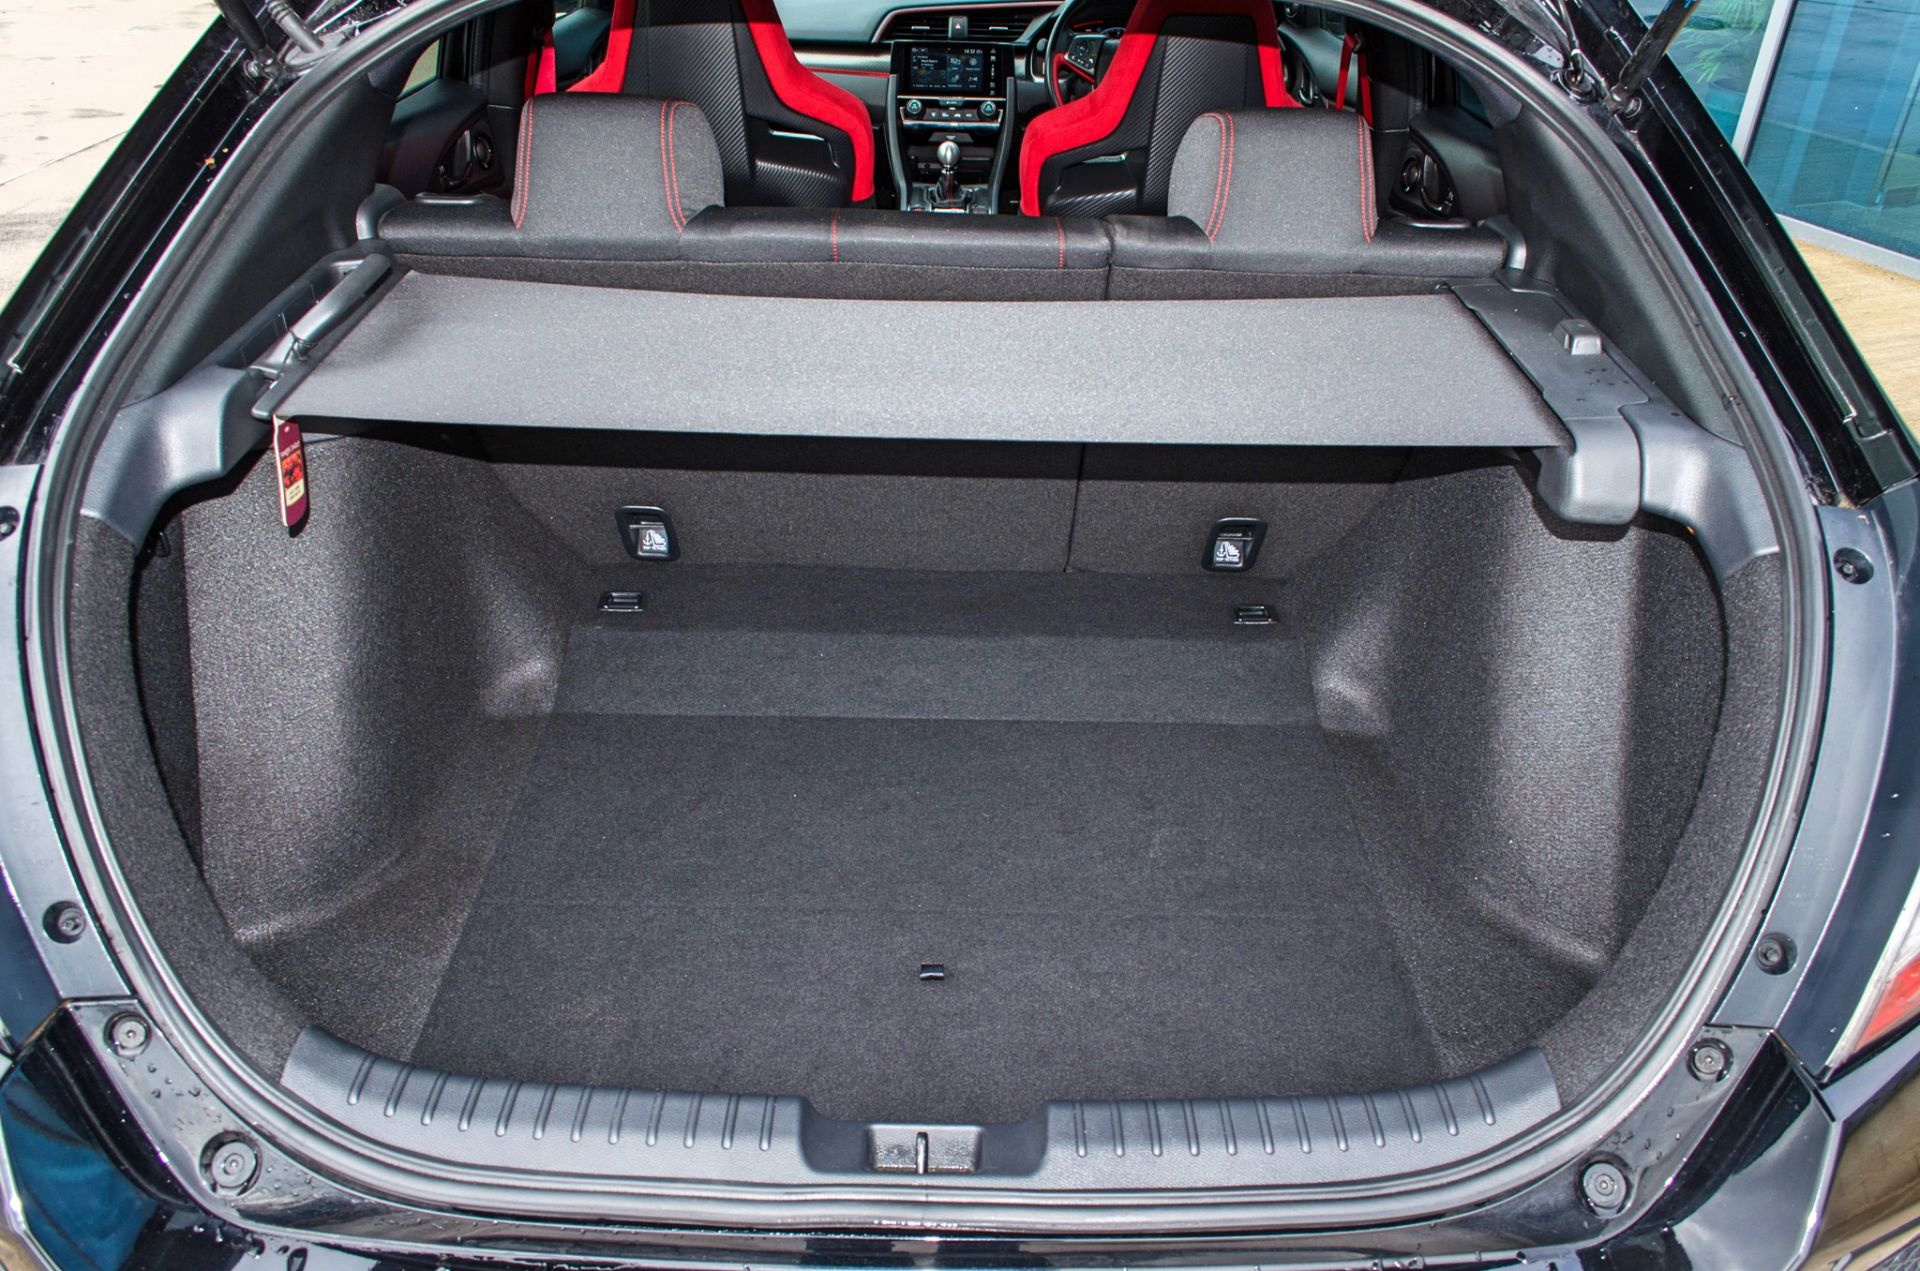 2018 Honda Civic GT Type R V-Tec 5 door hatchback Registration: DU68YHN Odometer: 16,429 Colour: - Image 48 of 54